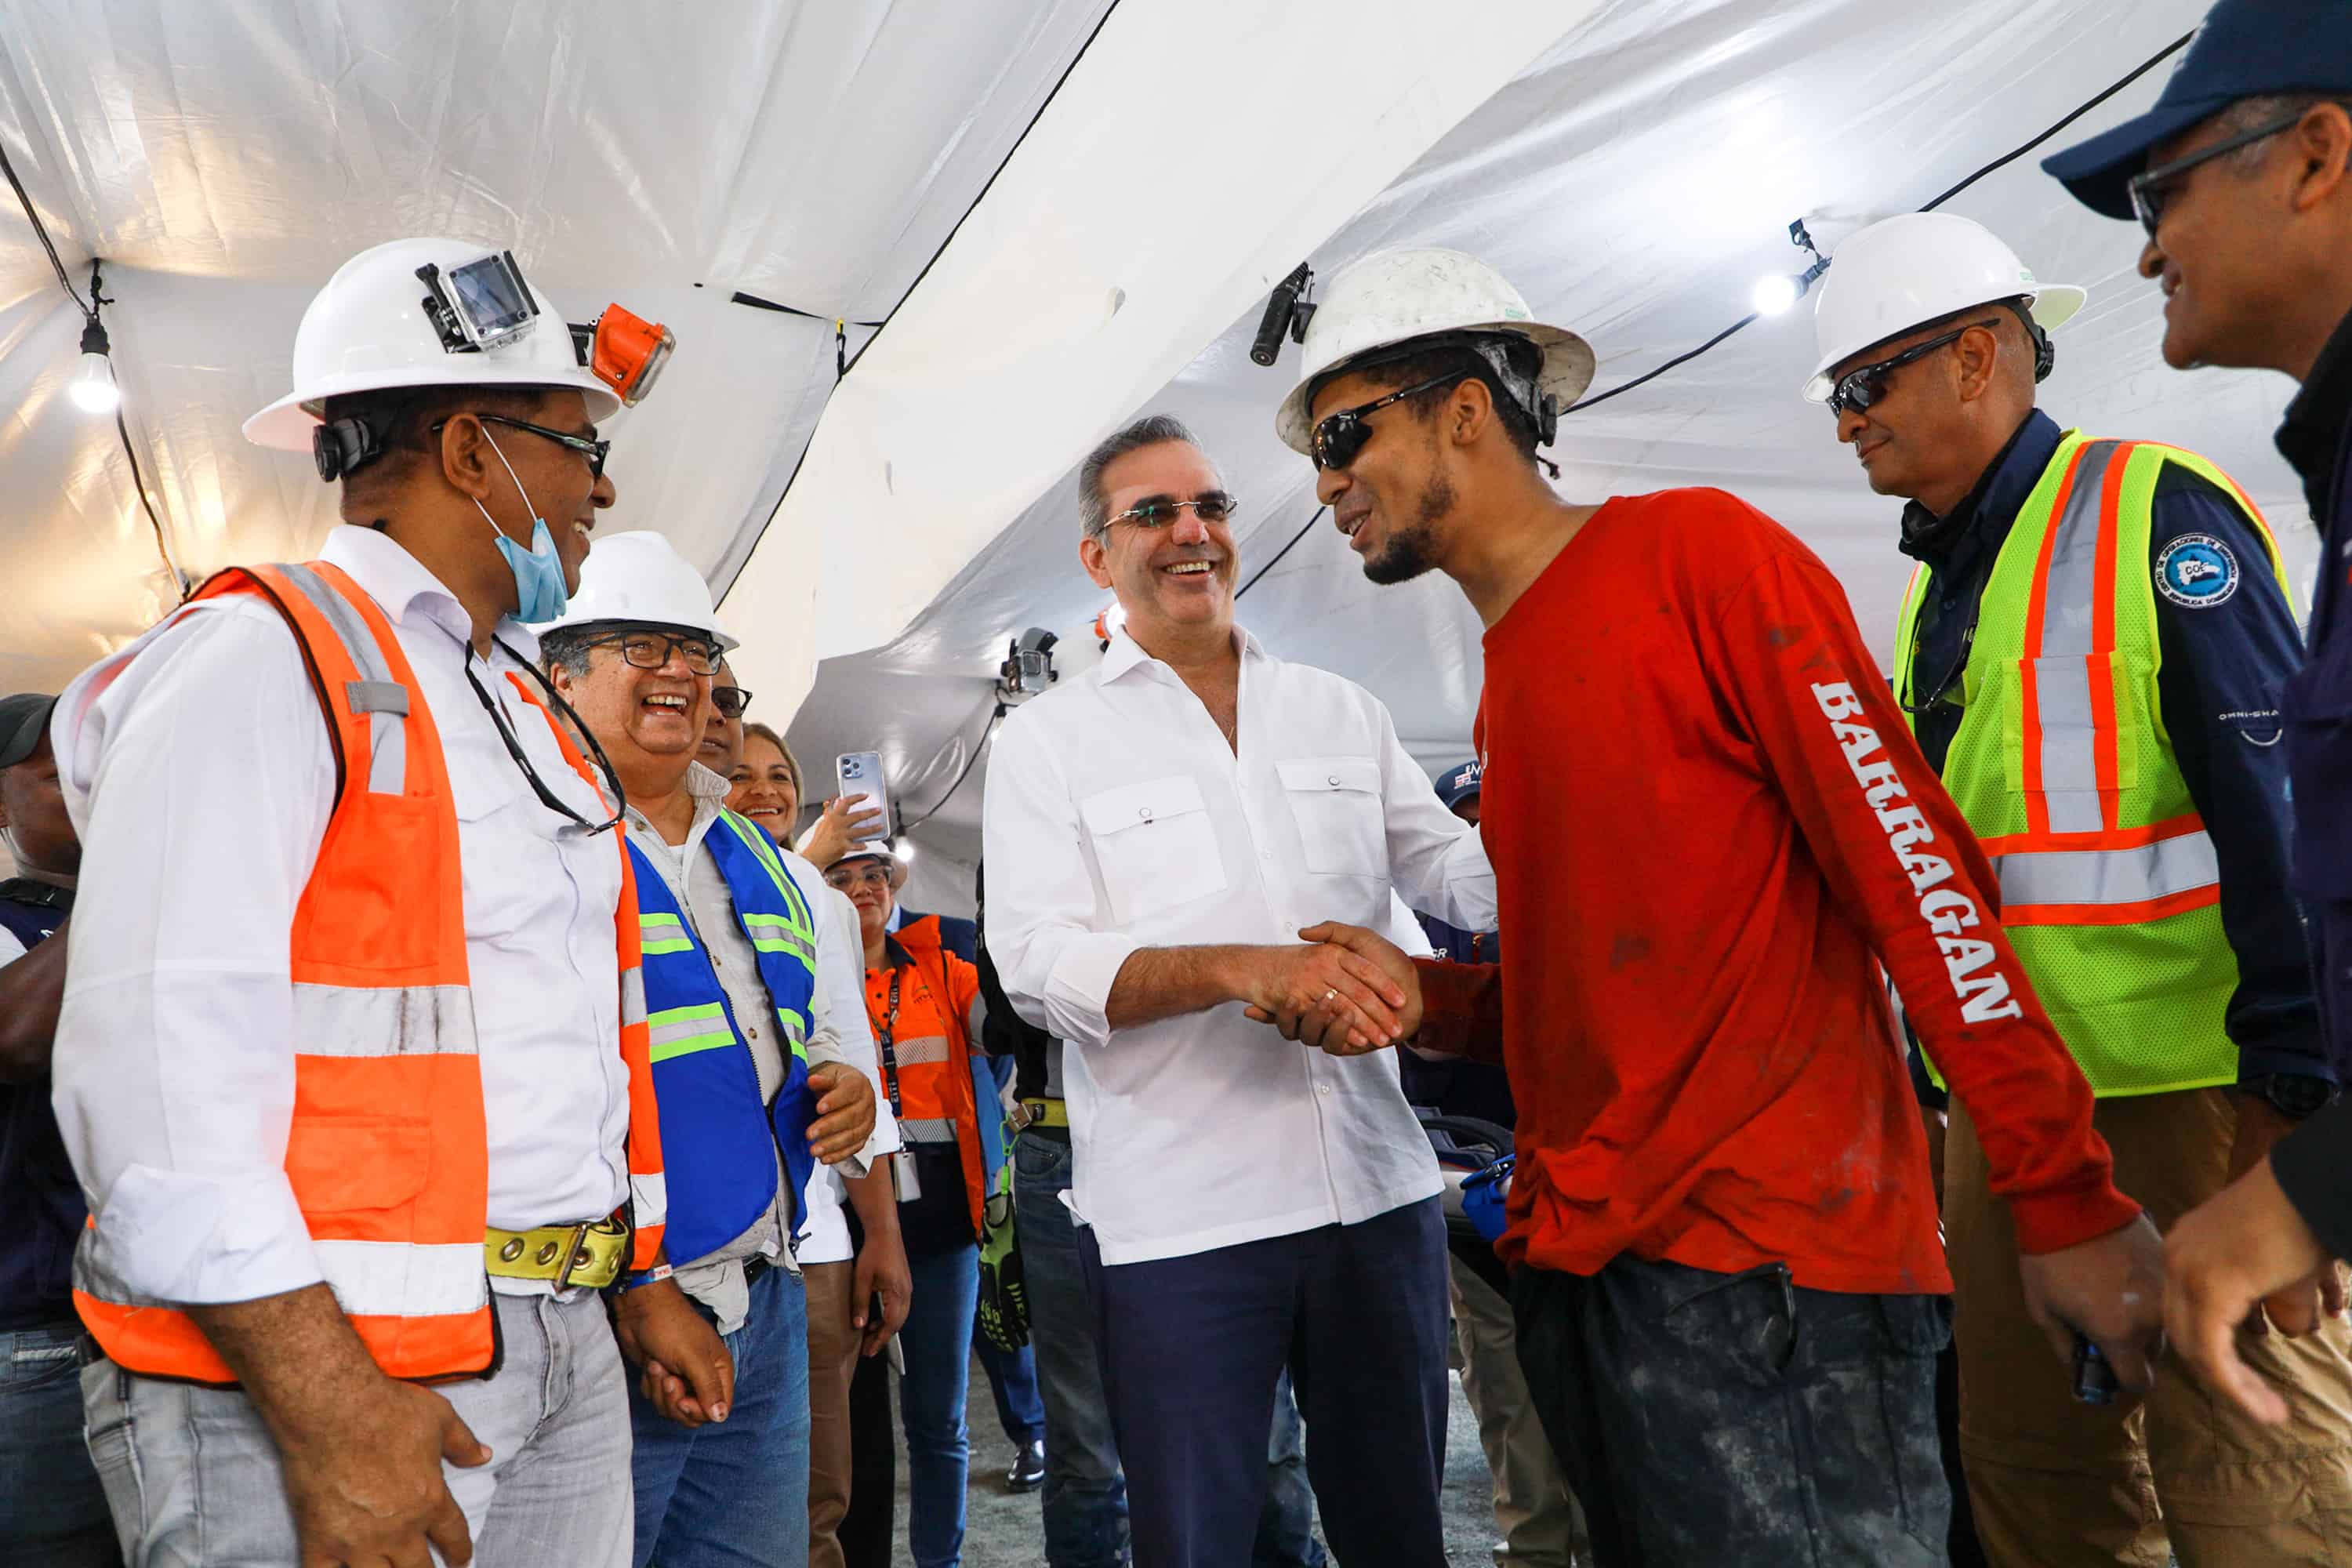 El presidente Luis Abinader estrecha la mano de Gregores Alexander Méndez, antes del chequeo médico de rigor, tras permanecer atrapado por diez días en una mina del Cerro de Maimón